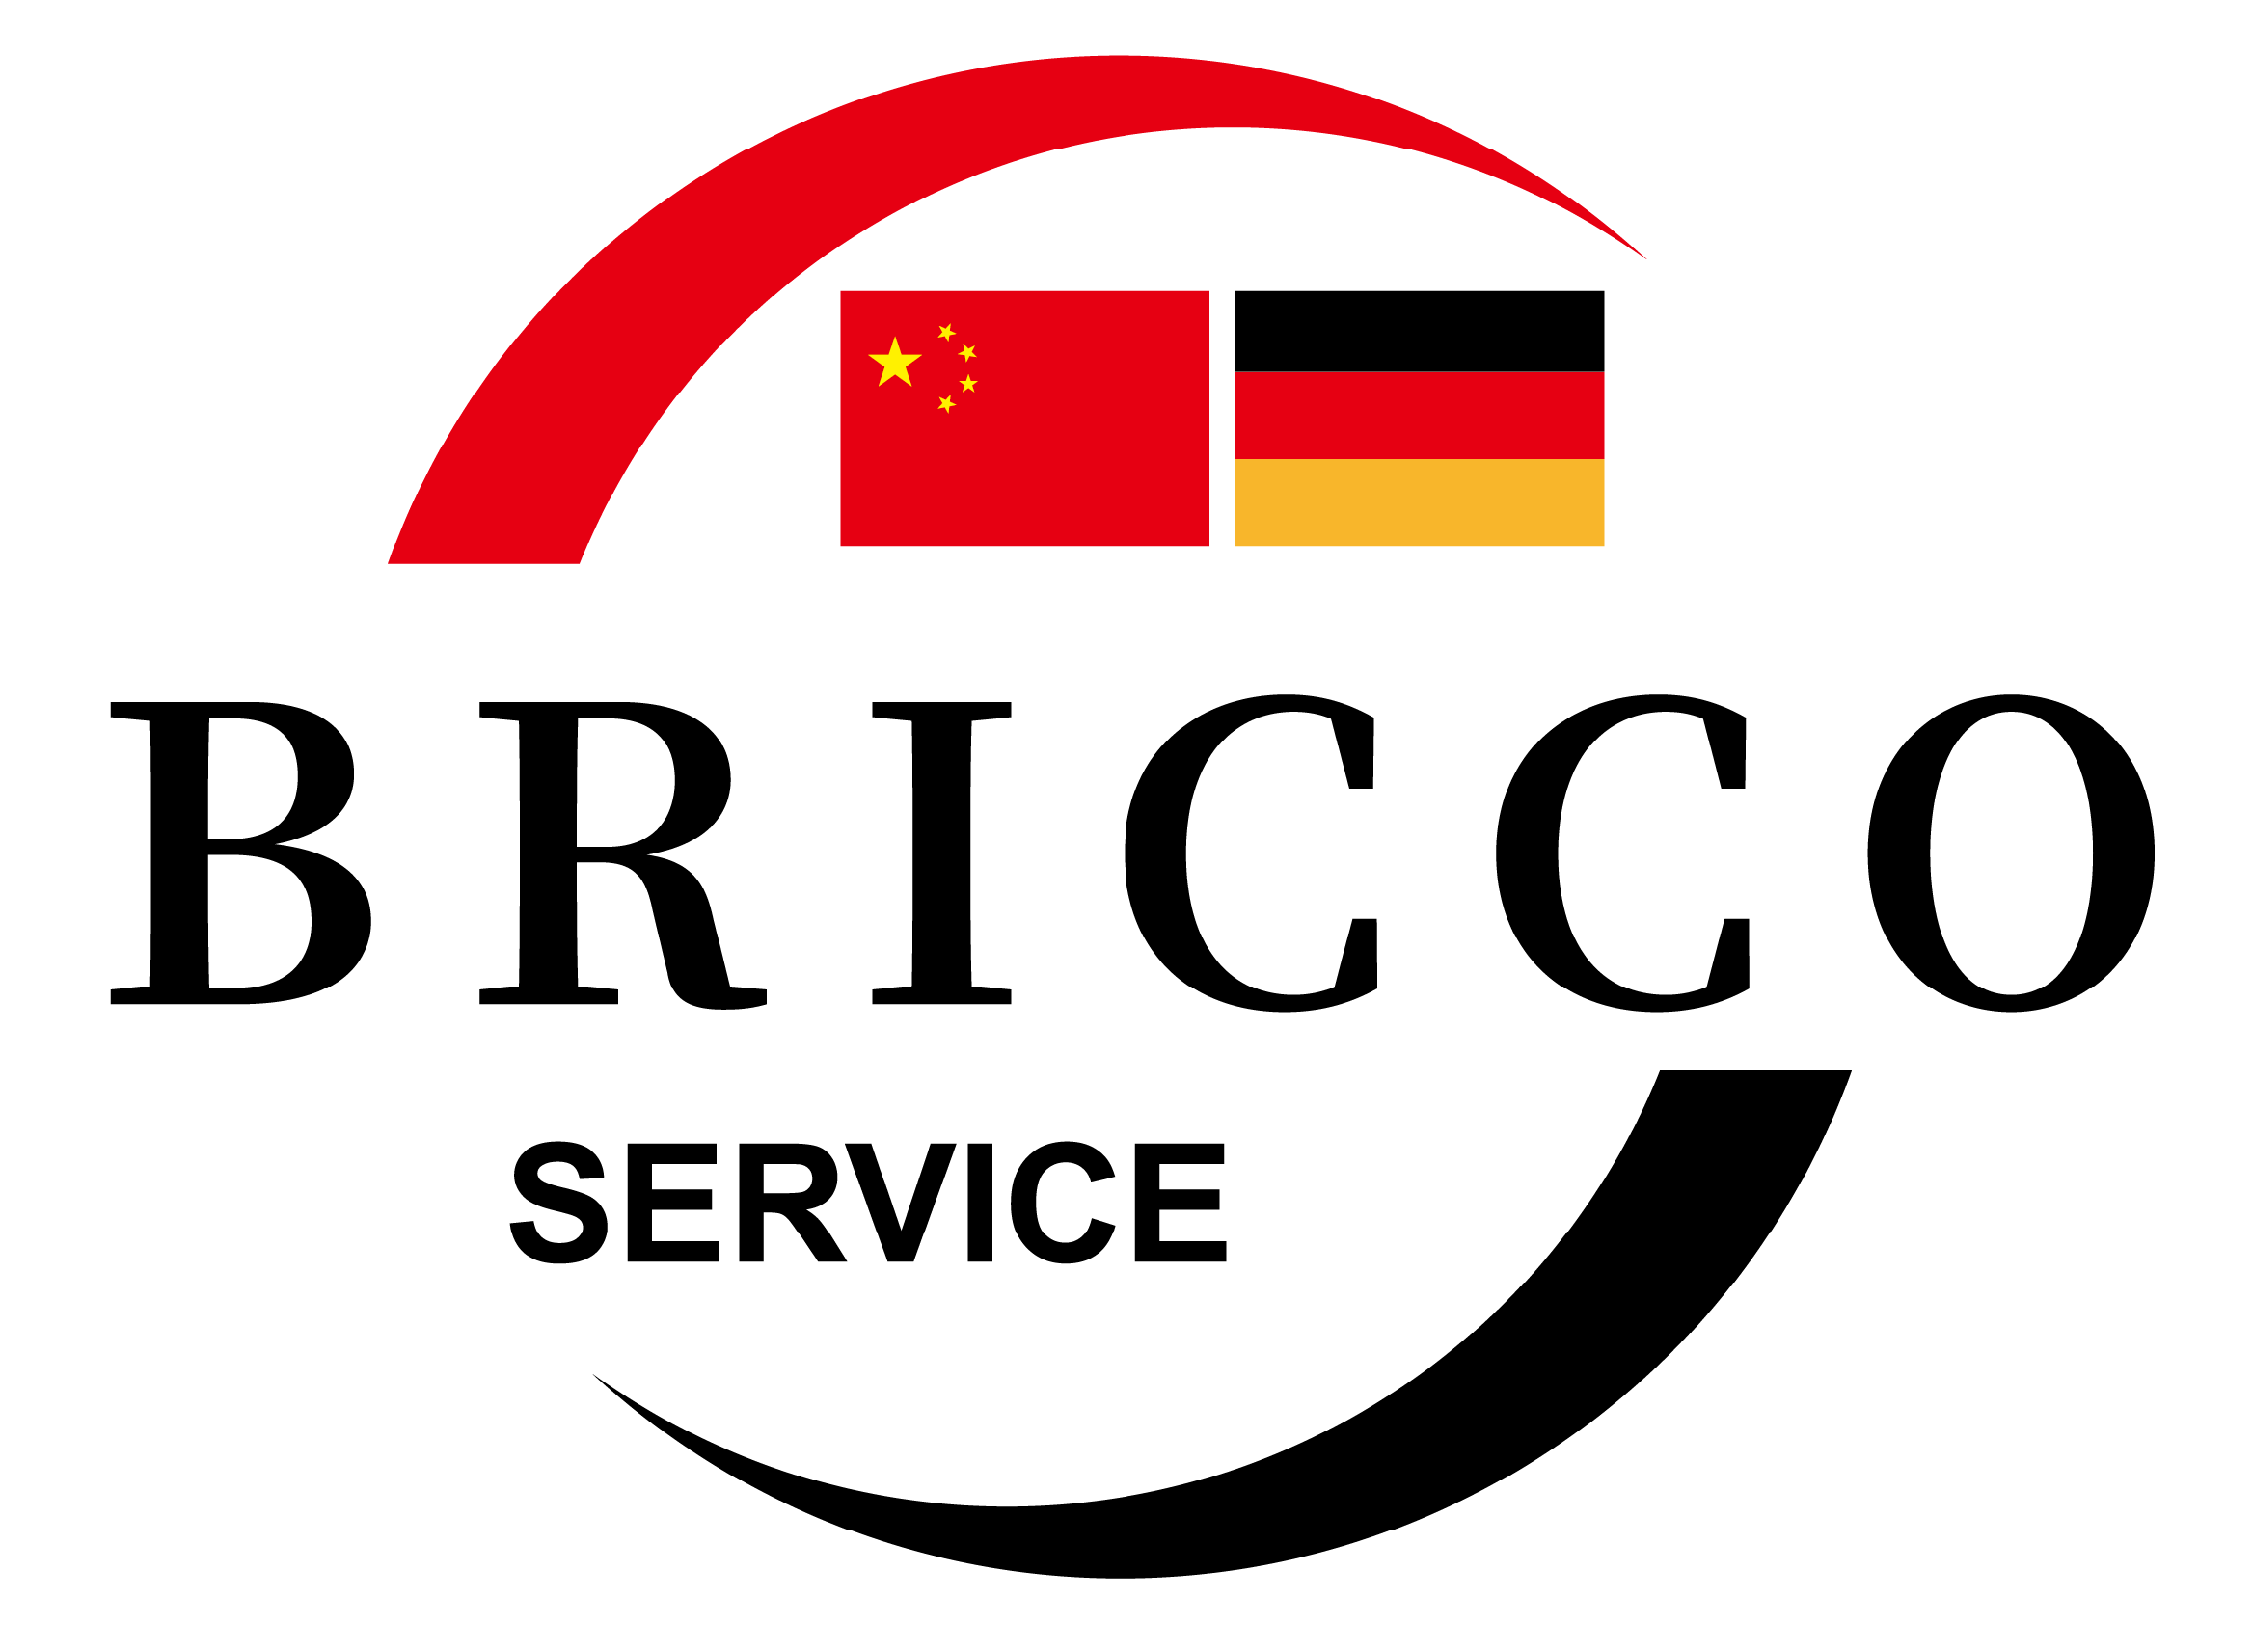 BRICCO SERVICE